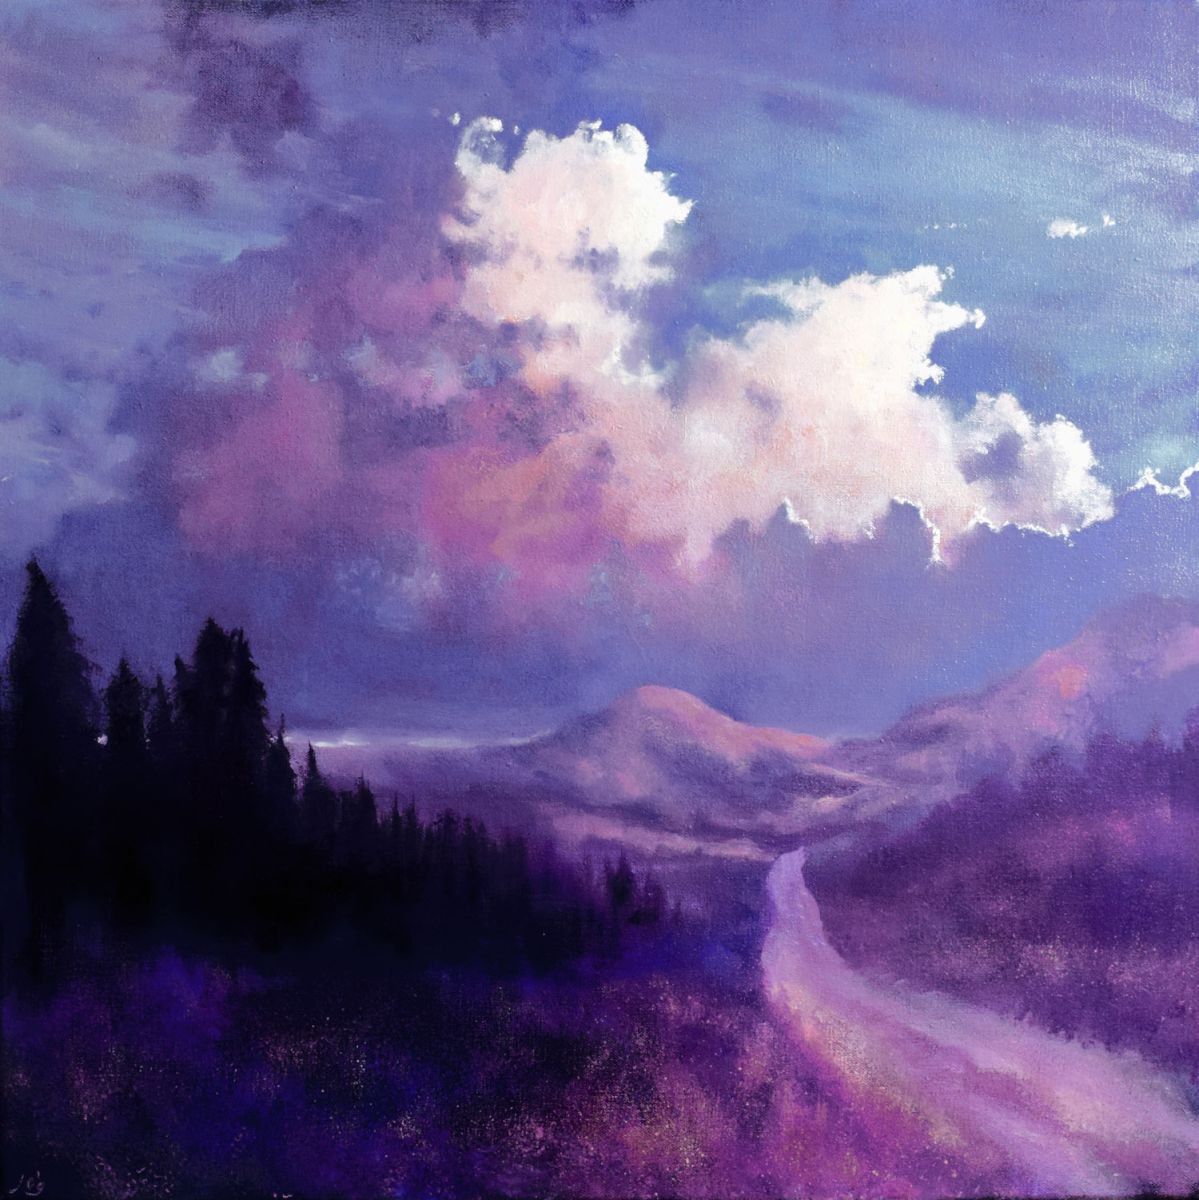 The Mountain Road IV by John O’Grady